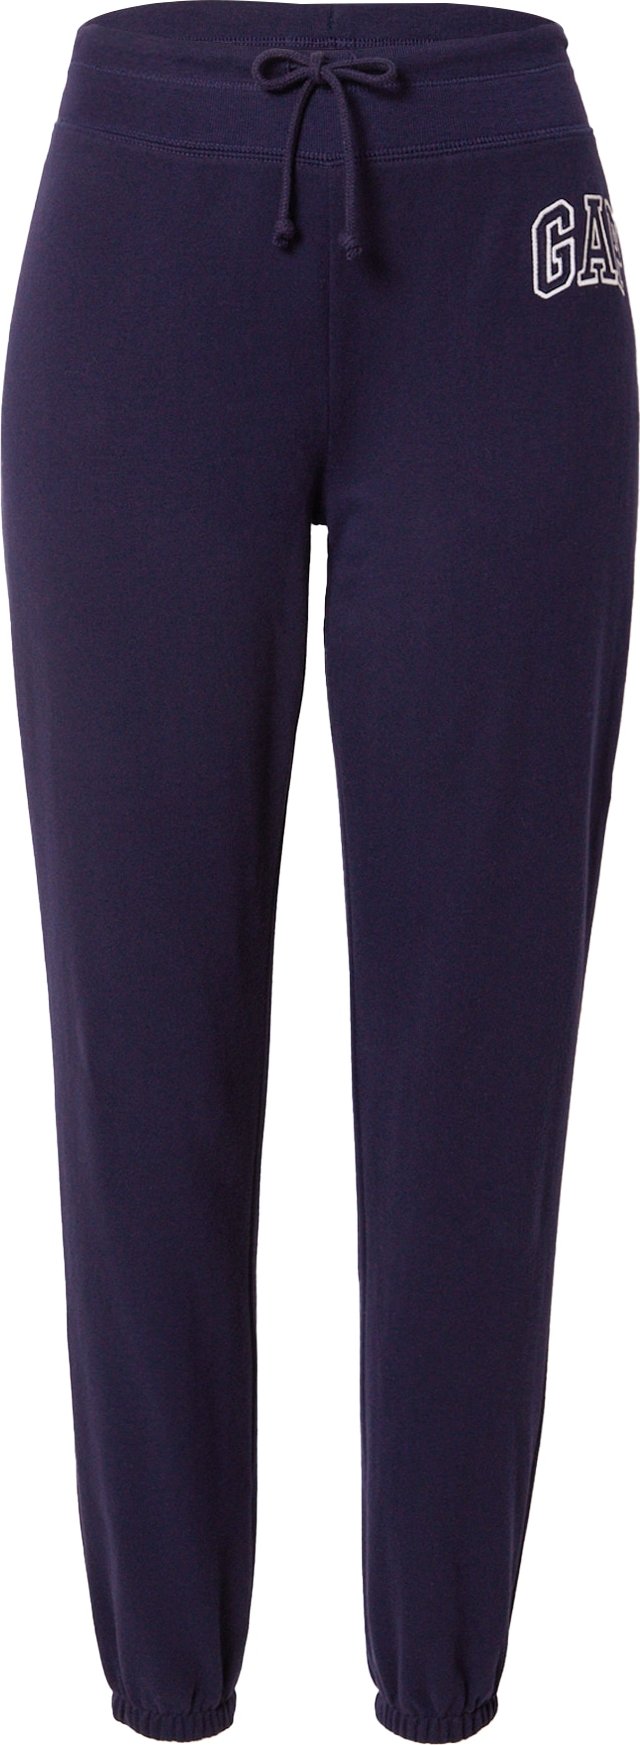 Kalhoty Gap Petite námořnická modř / bílá